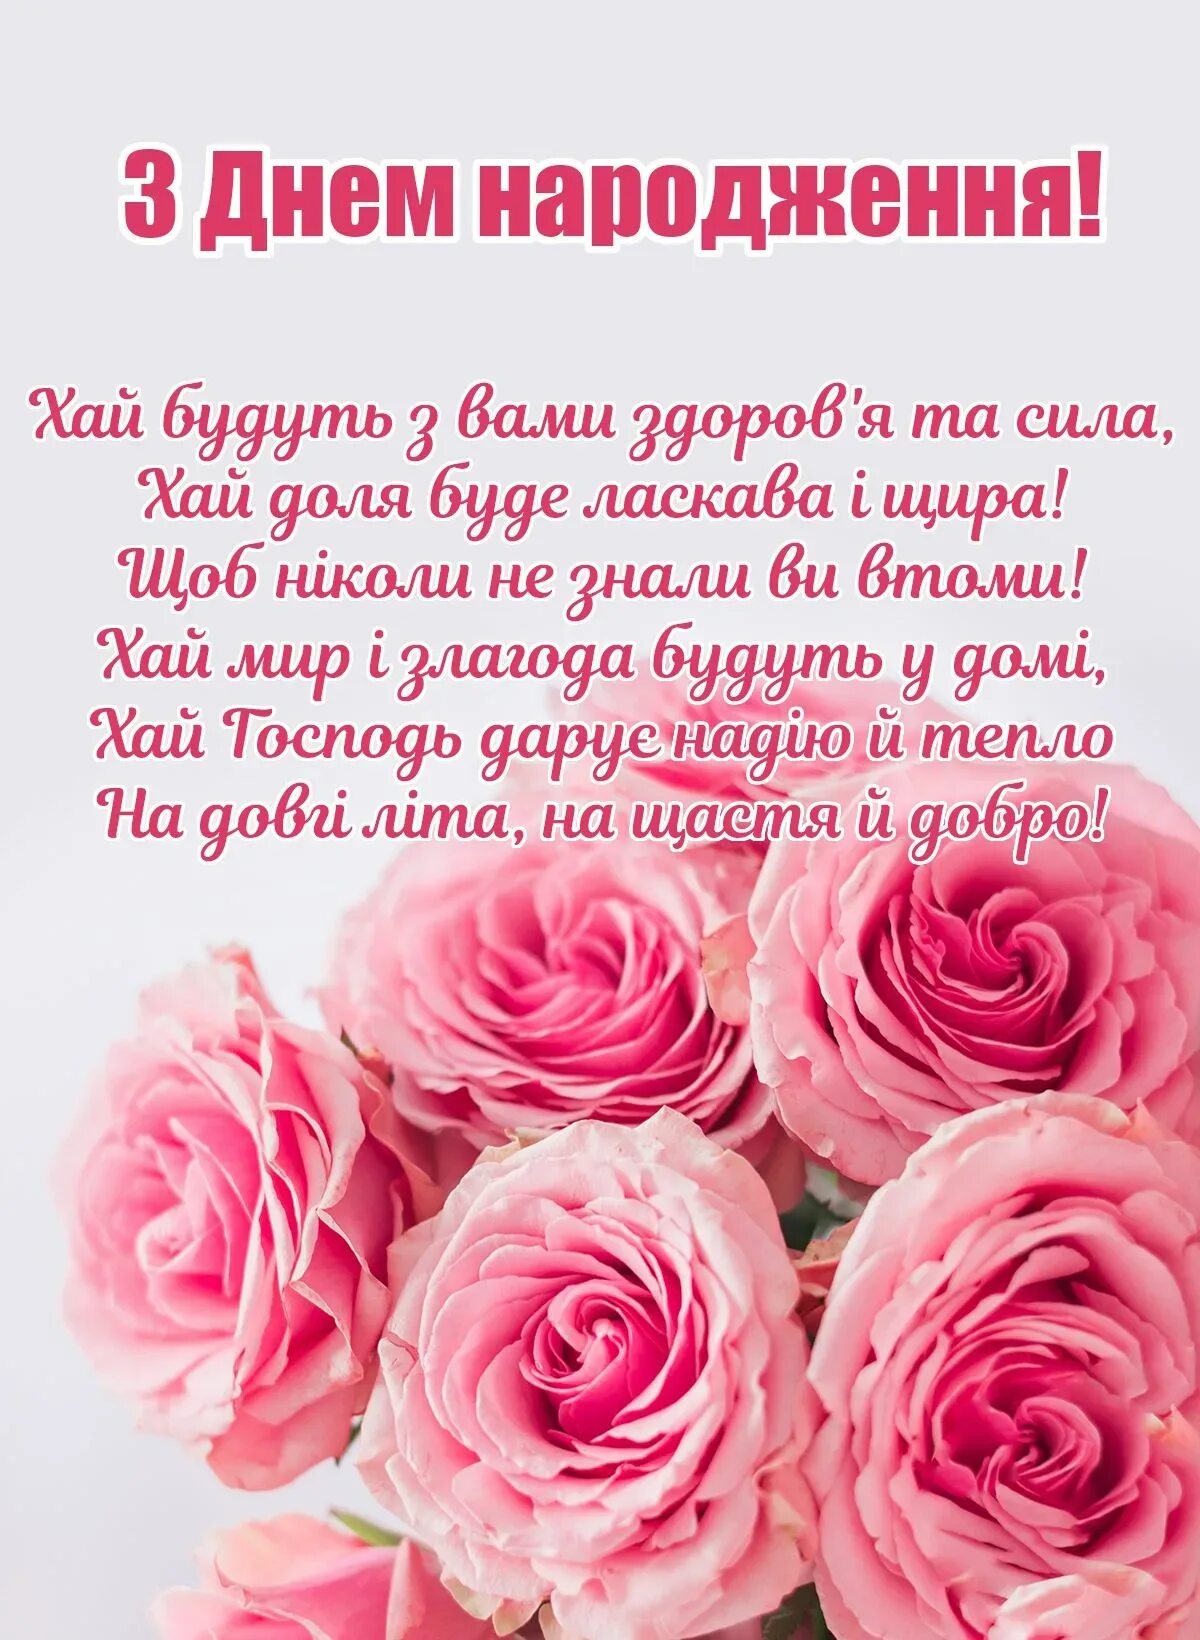 День народження жінки привітання на українській. З днем народження. Привітання з днем народження. Привітаня з днeм народжeня. Вітаю з днем народження.